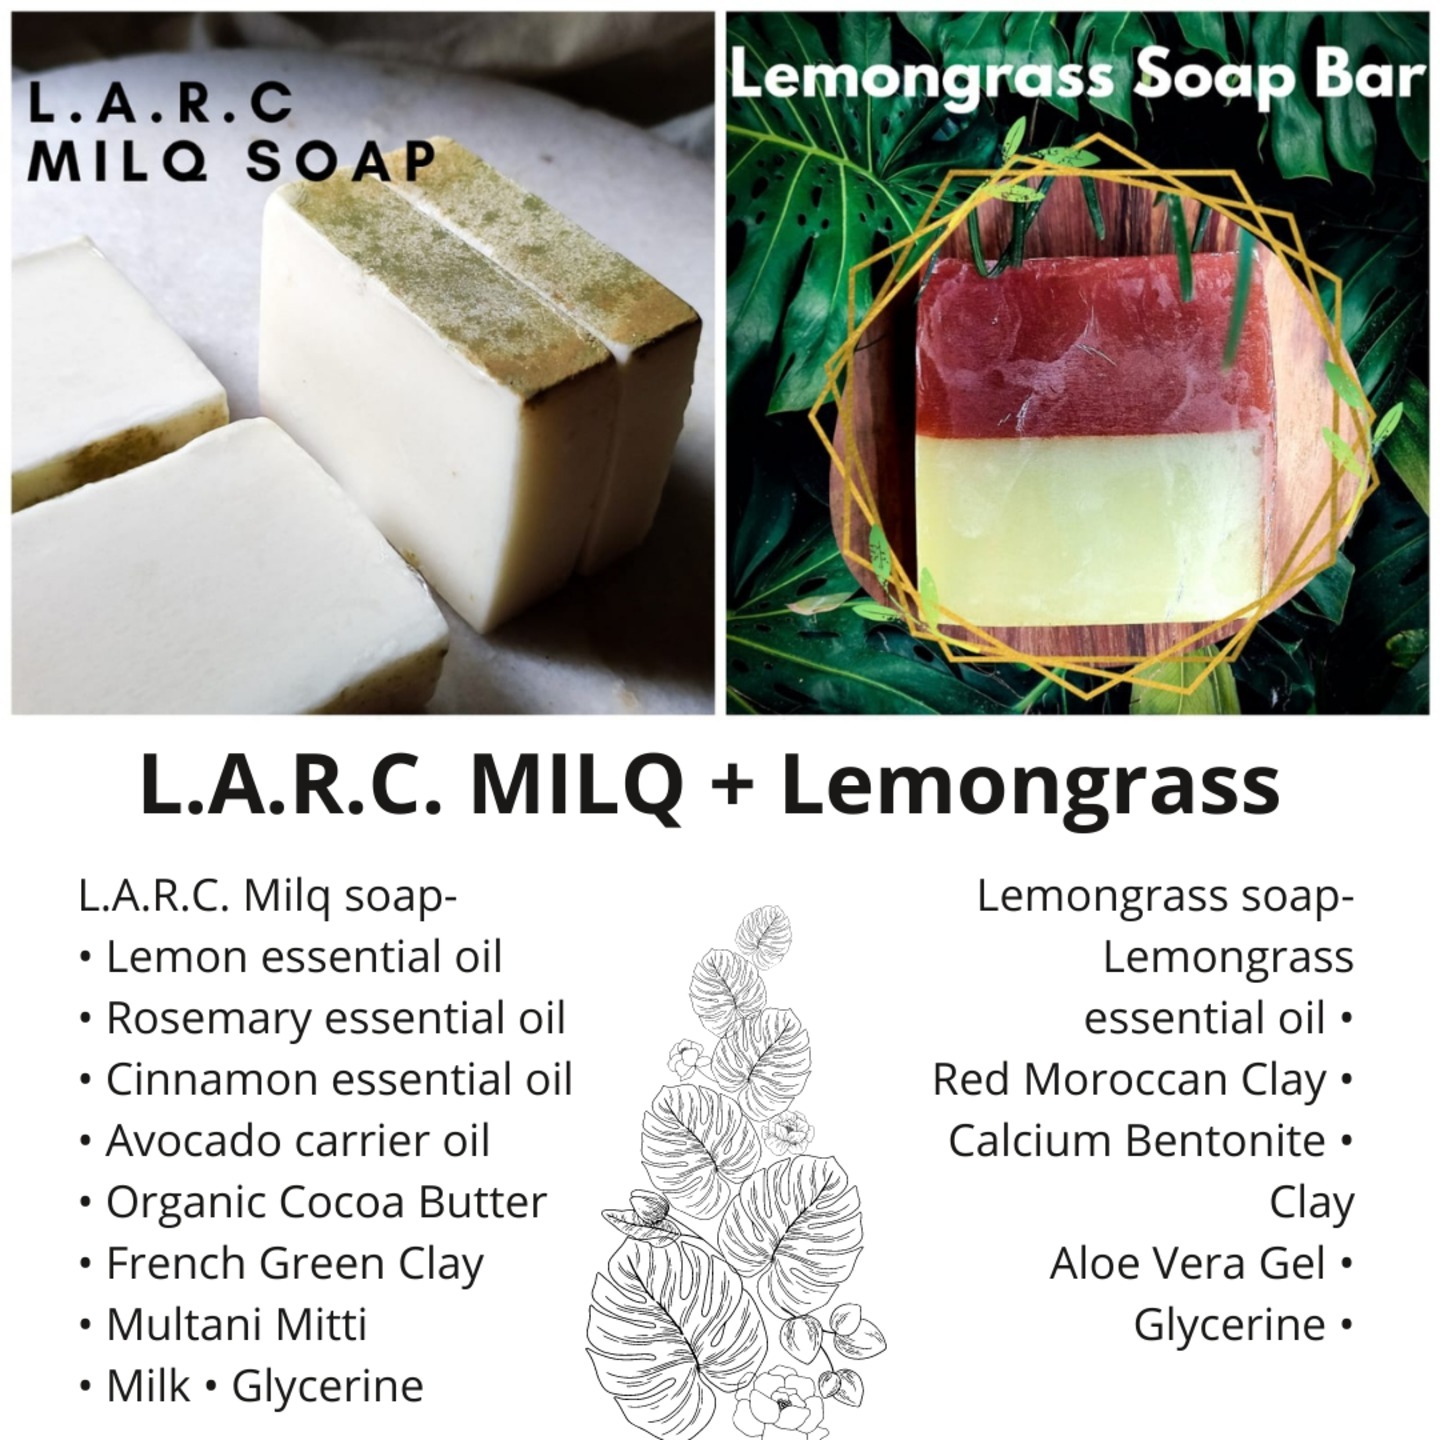 L.A.R.C Milq Soap & Lemongrass Soap Bars